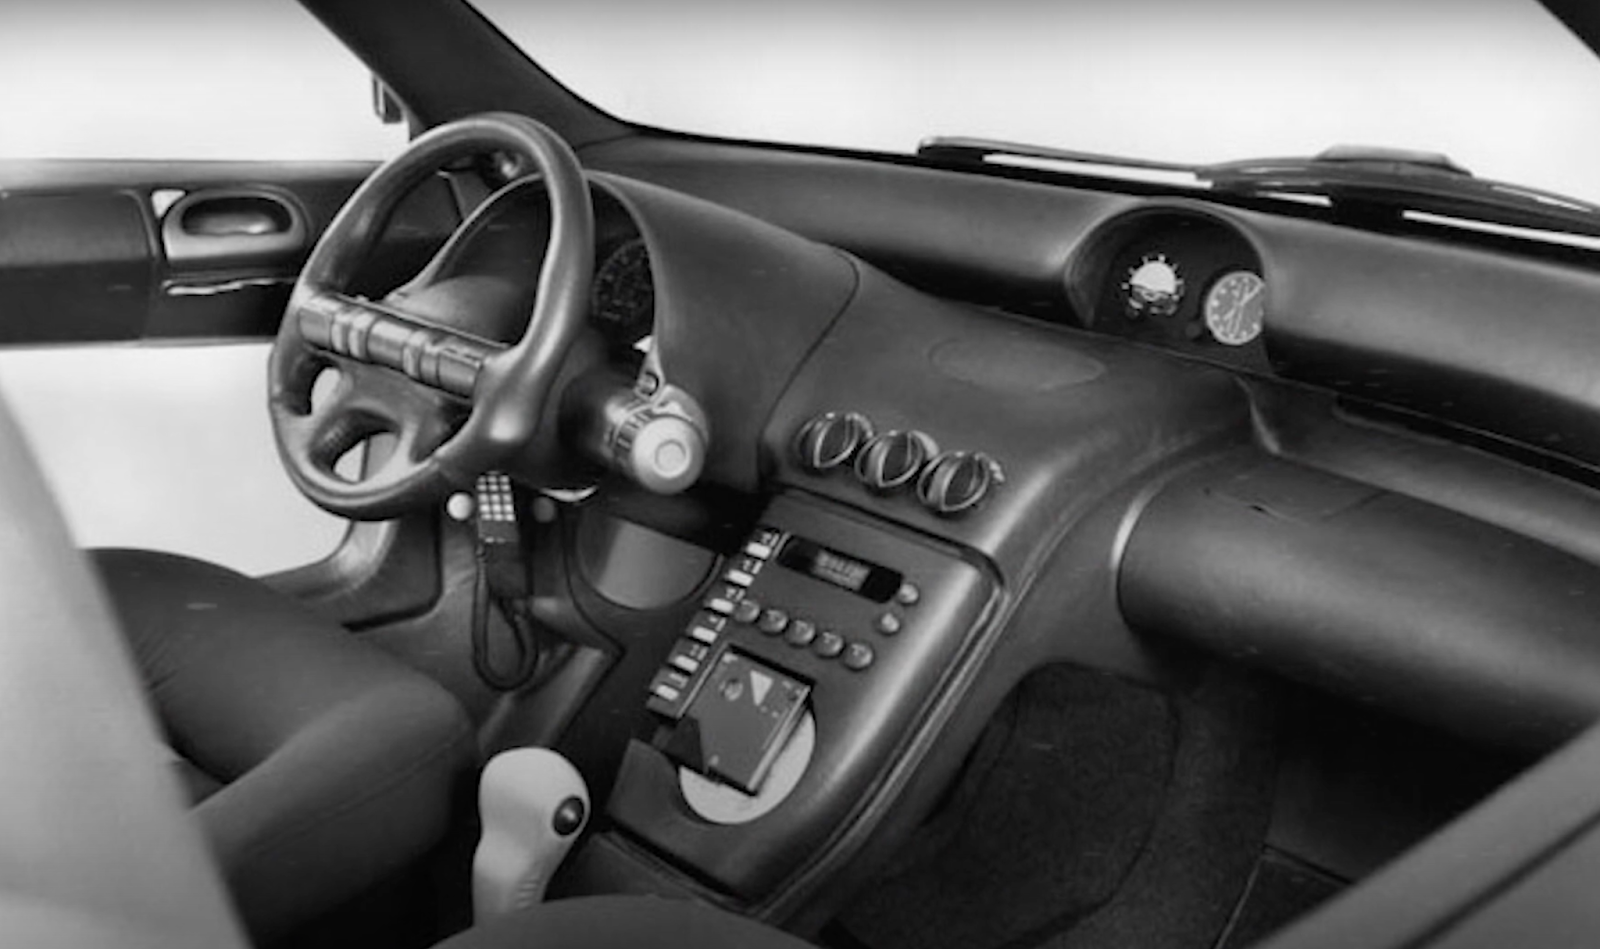 Pontiac Stinger Concept Car interior